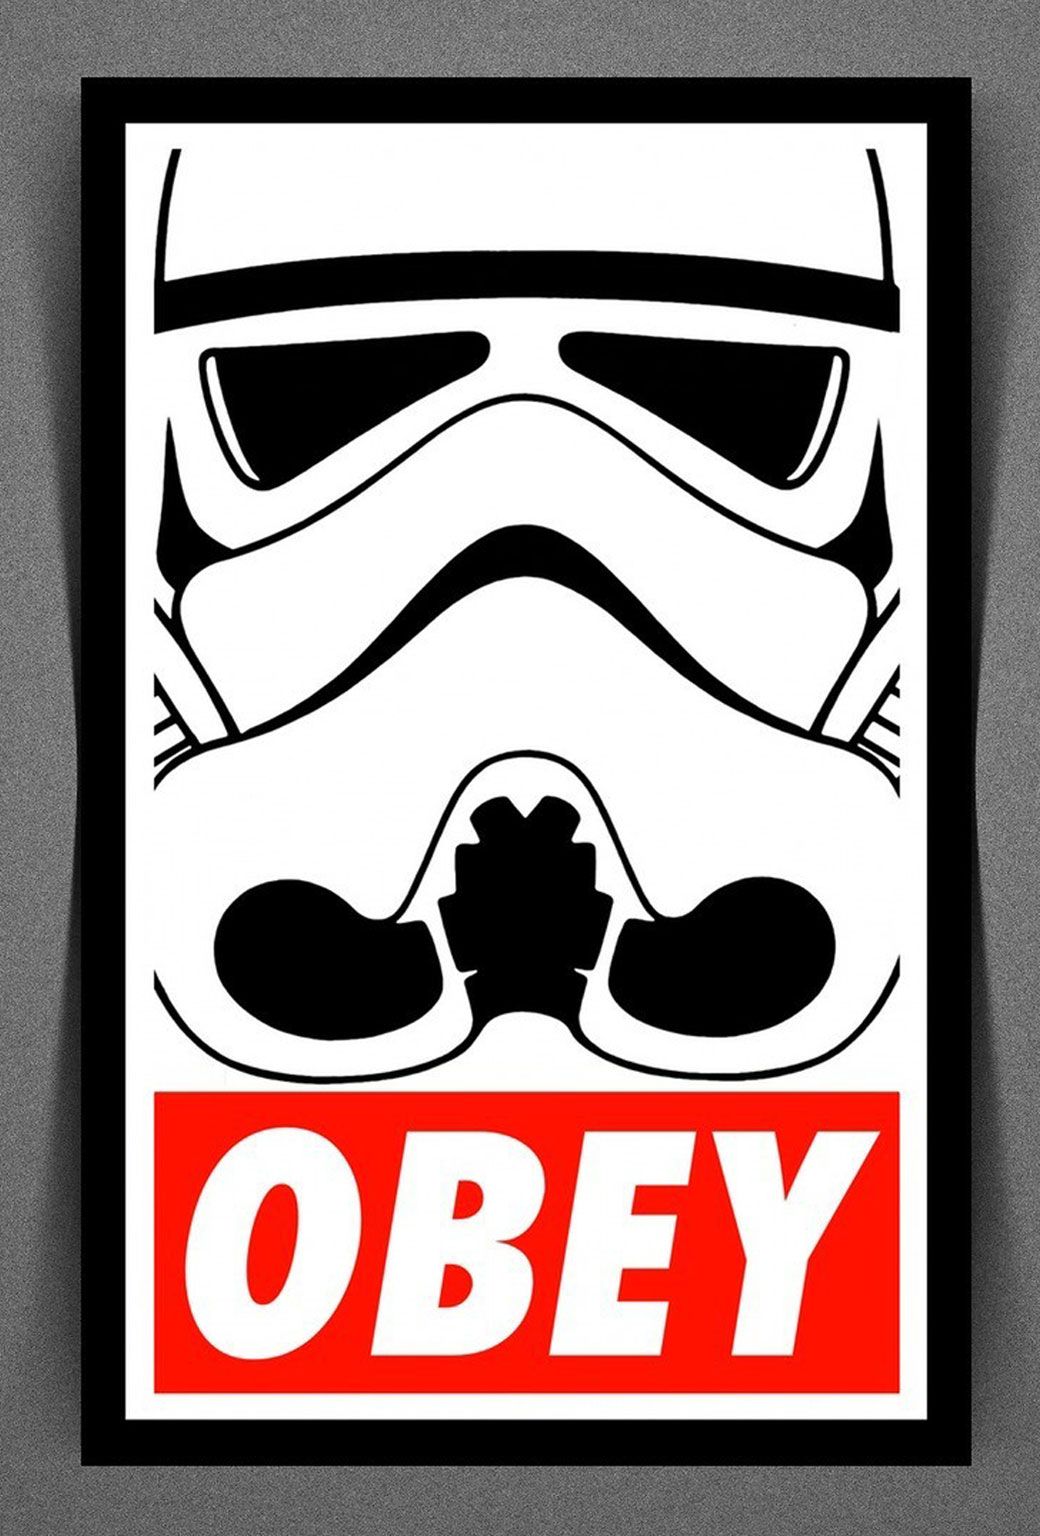 Obey Wallpaper - Stormtrooper Door Deck - HD Wallpaper 